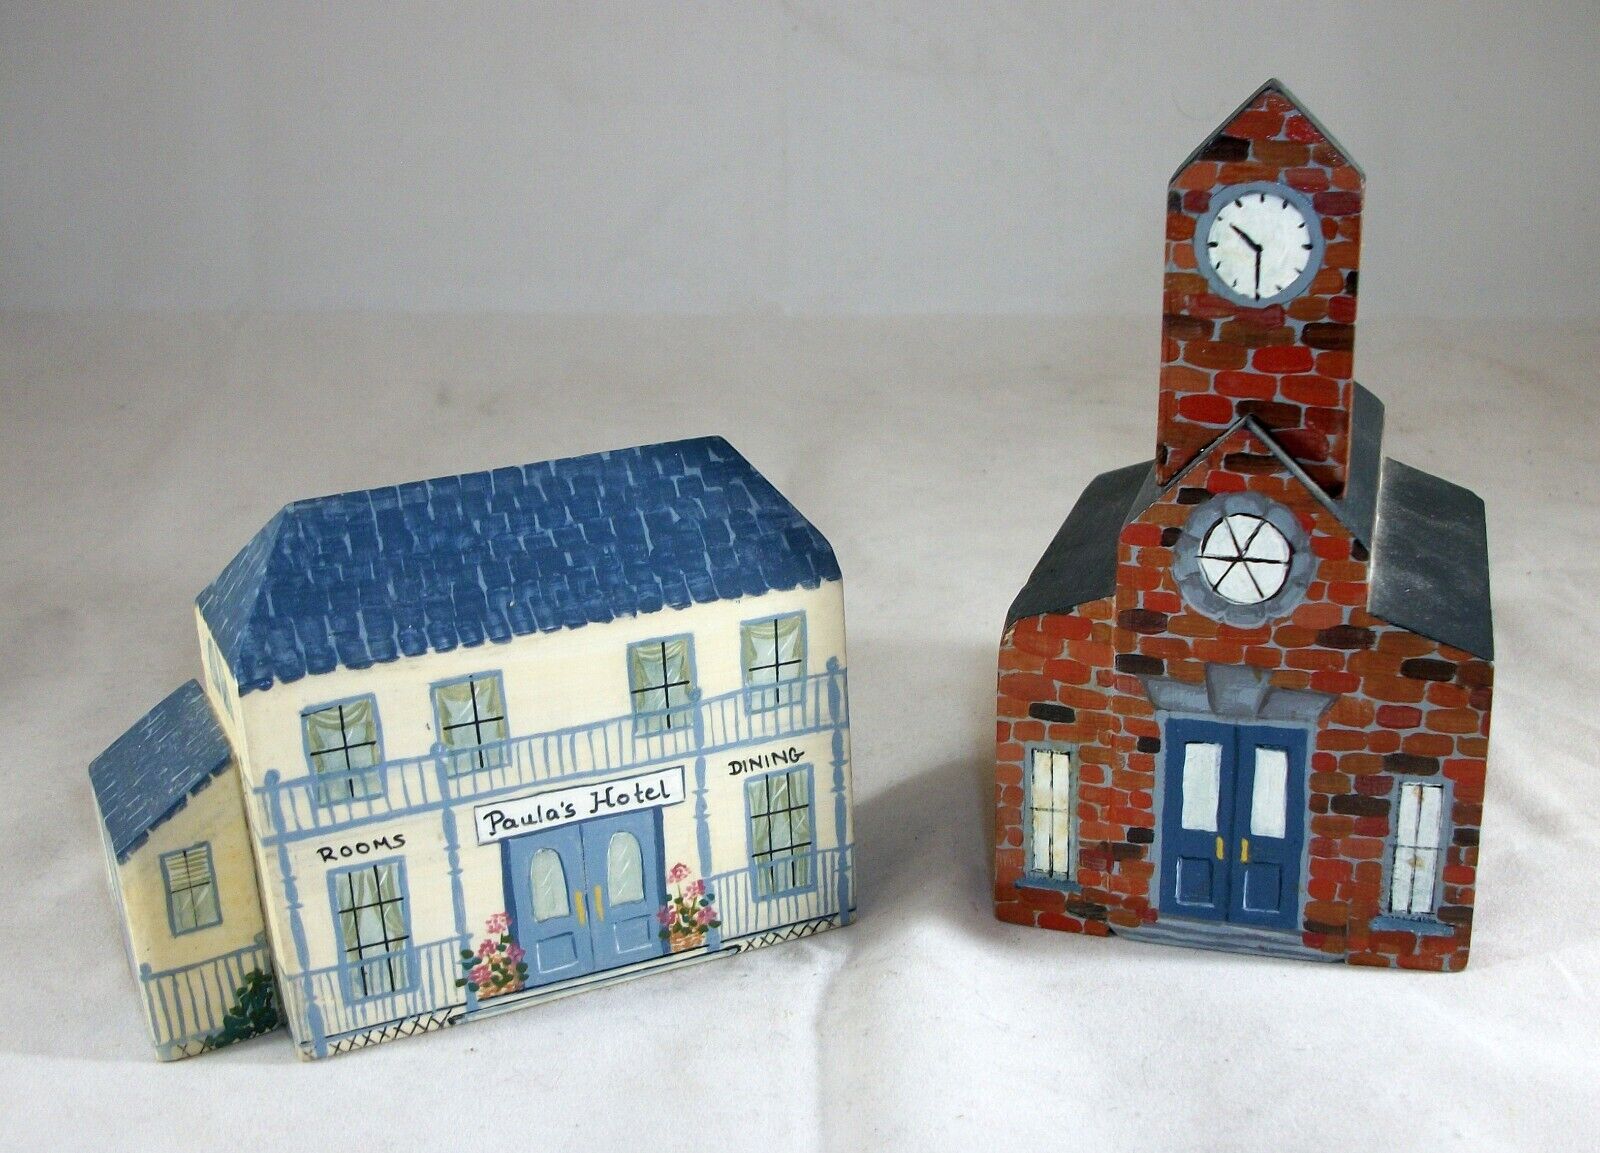 Wooden Brick School House and Hotel Handmade Wood Figurines by Renee Hayman